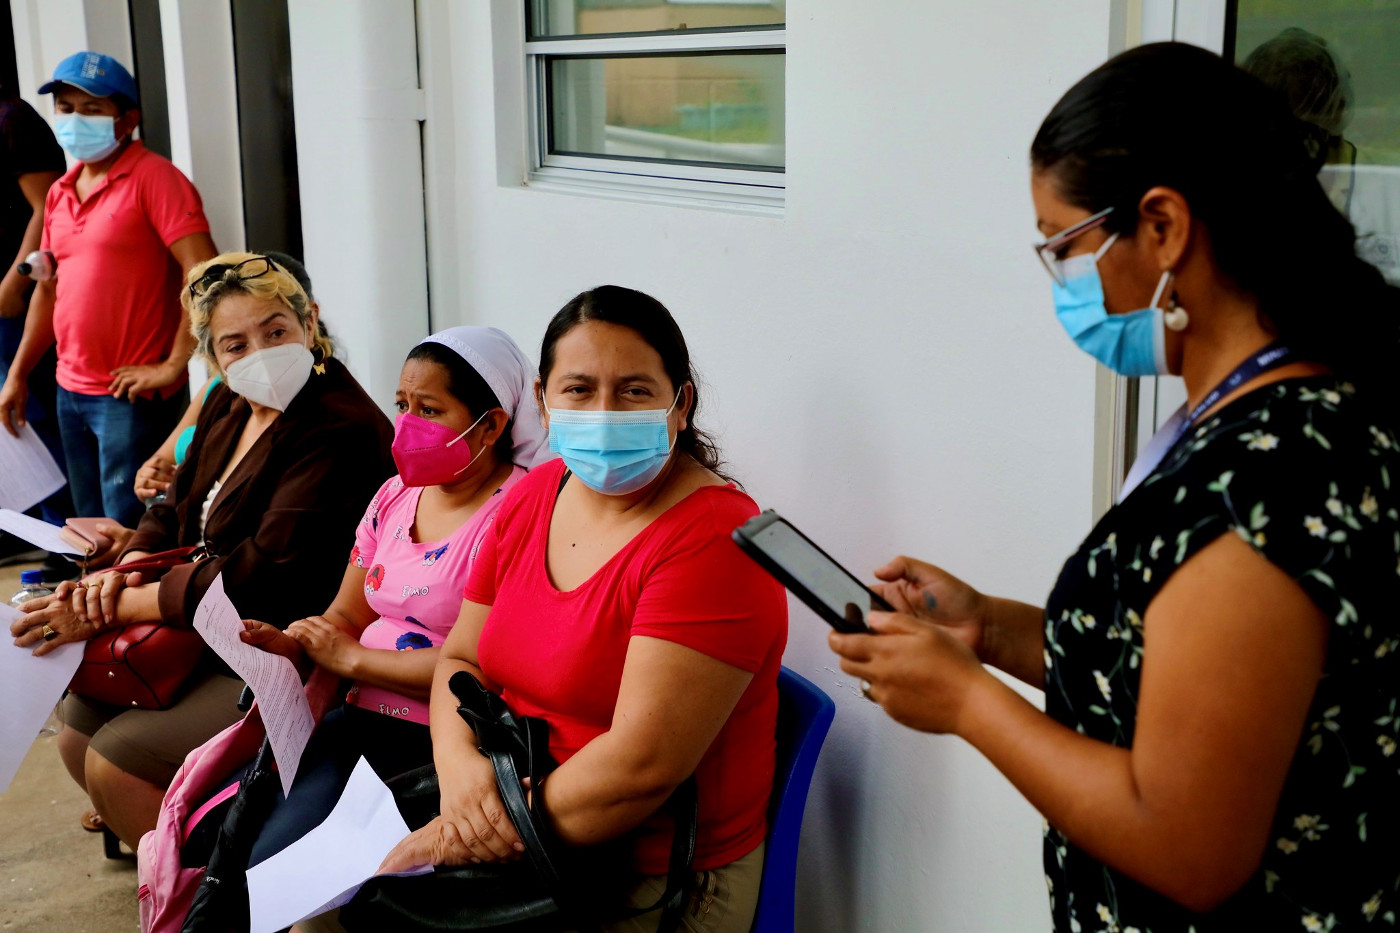 Warten auf die Corona-Impfung: In Ländern, deren Gesundheitswesen eine mangelhafte Infrastruktur aufweist, sind Wege und Wartezeiten lang. Foto (Symbolbild aus El Salvador): Impfzentrum in Zaragoza, US-Botschaft San Salvador, CCO1.0